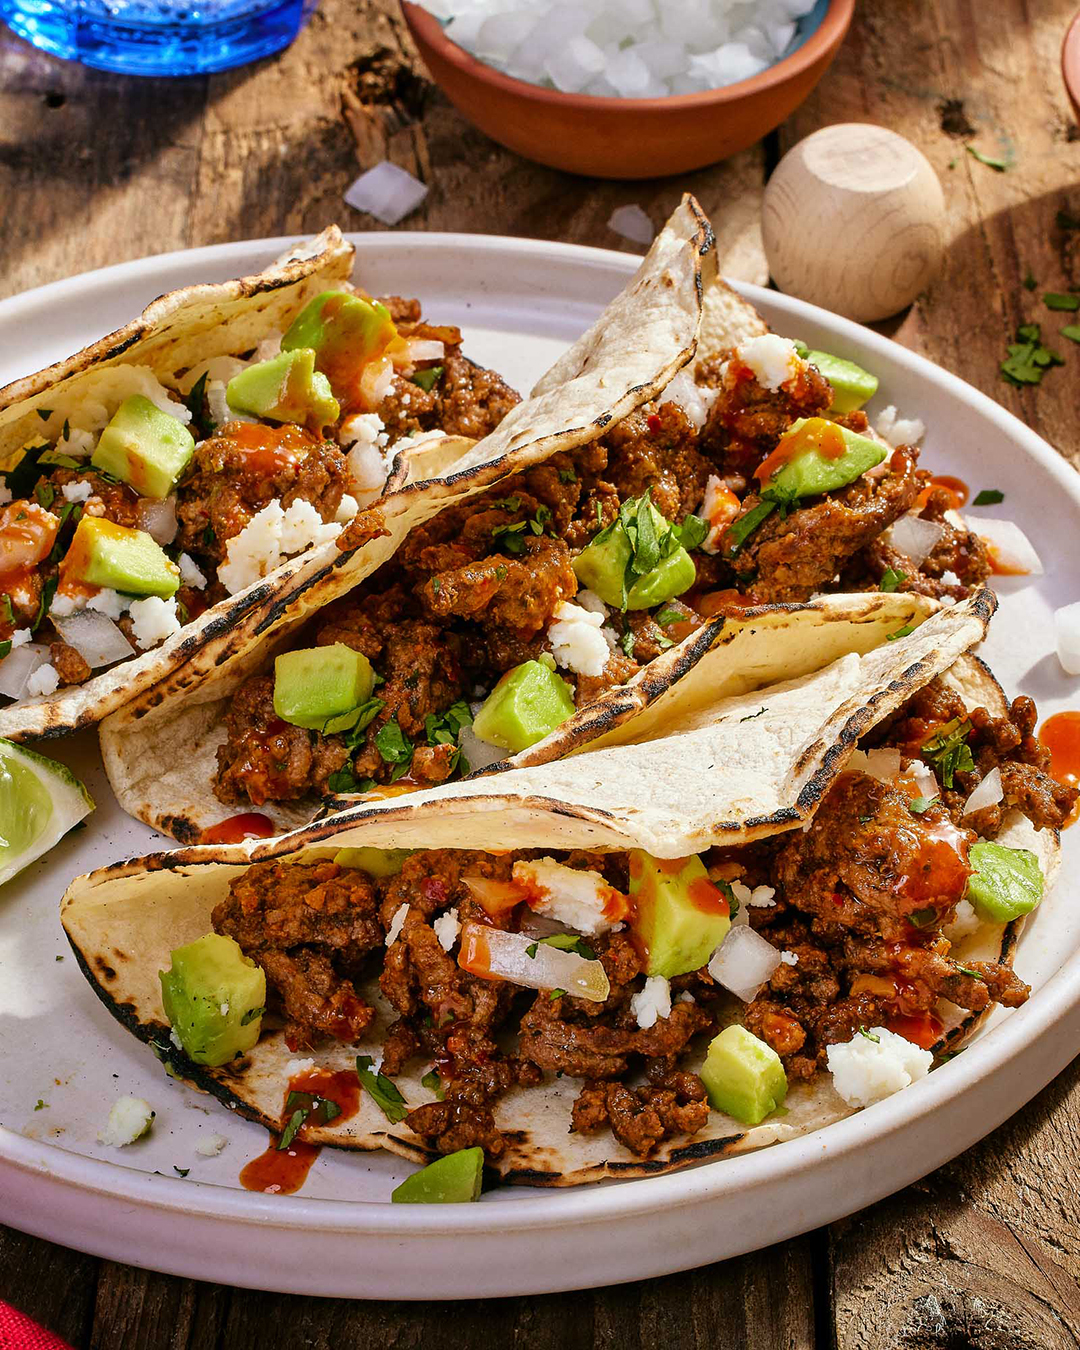 Cholula Original Tacos